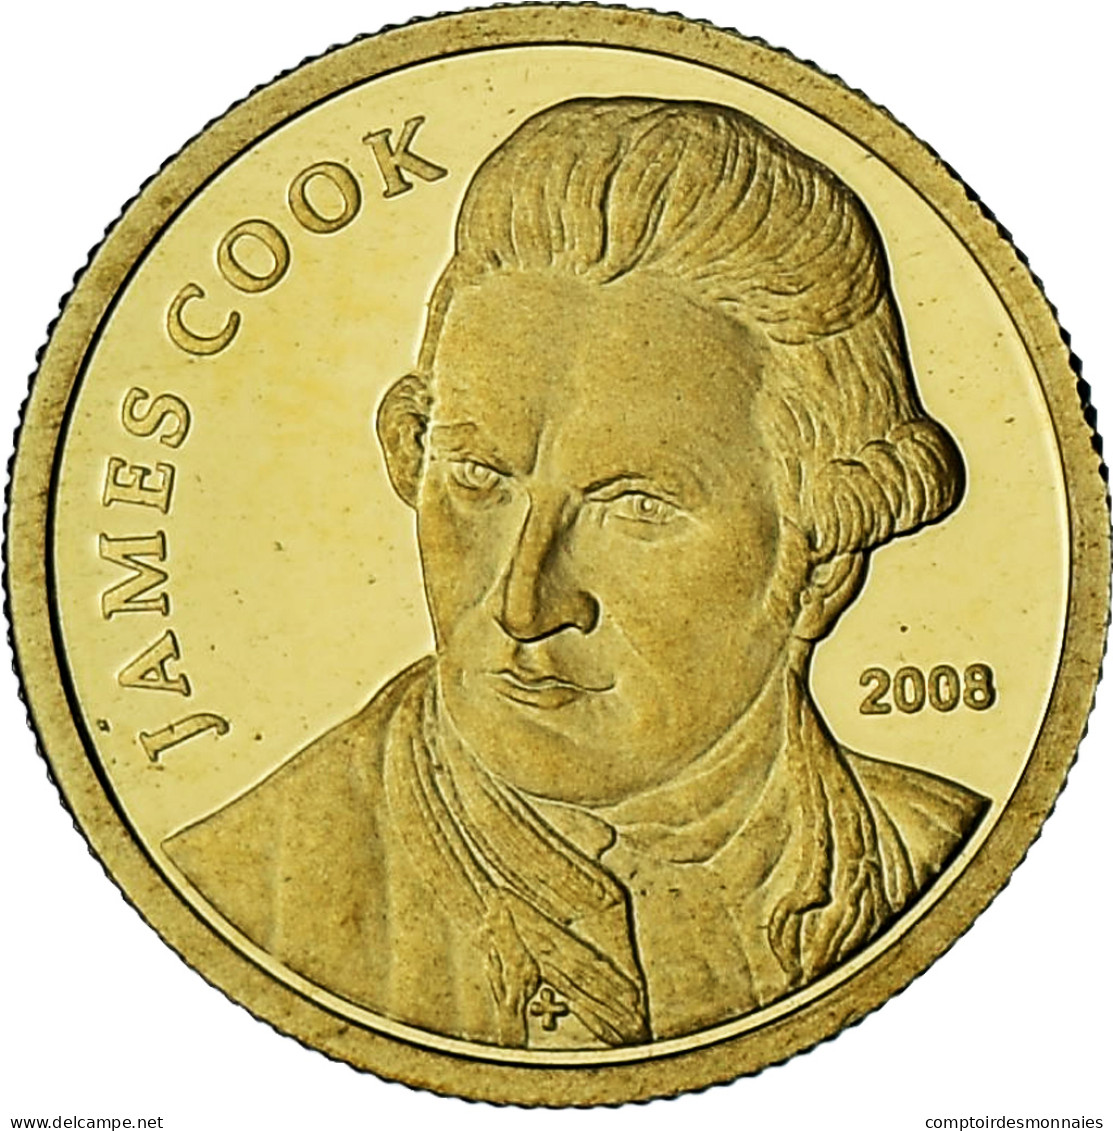 Îles Cook, Elizabeth II, James Cook, 10 Dollars, 2008, BE, FDC, Or - Cook Islands